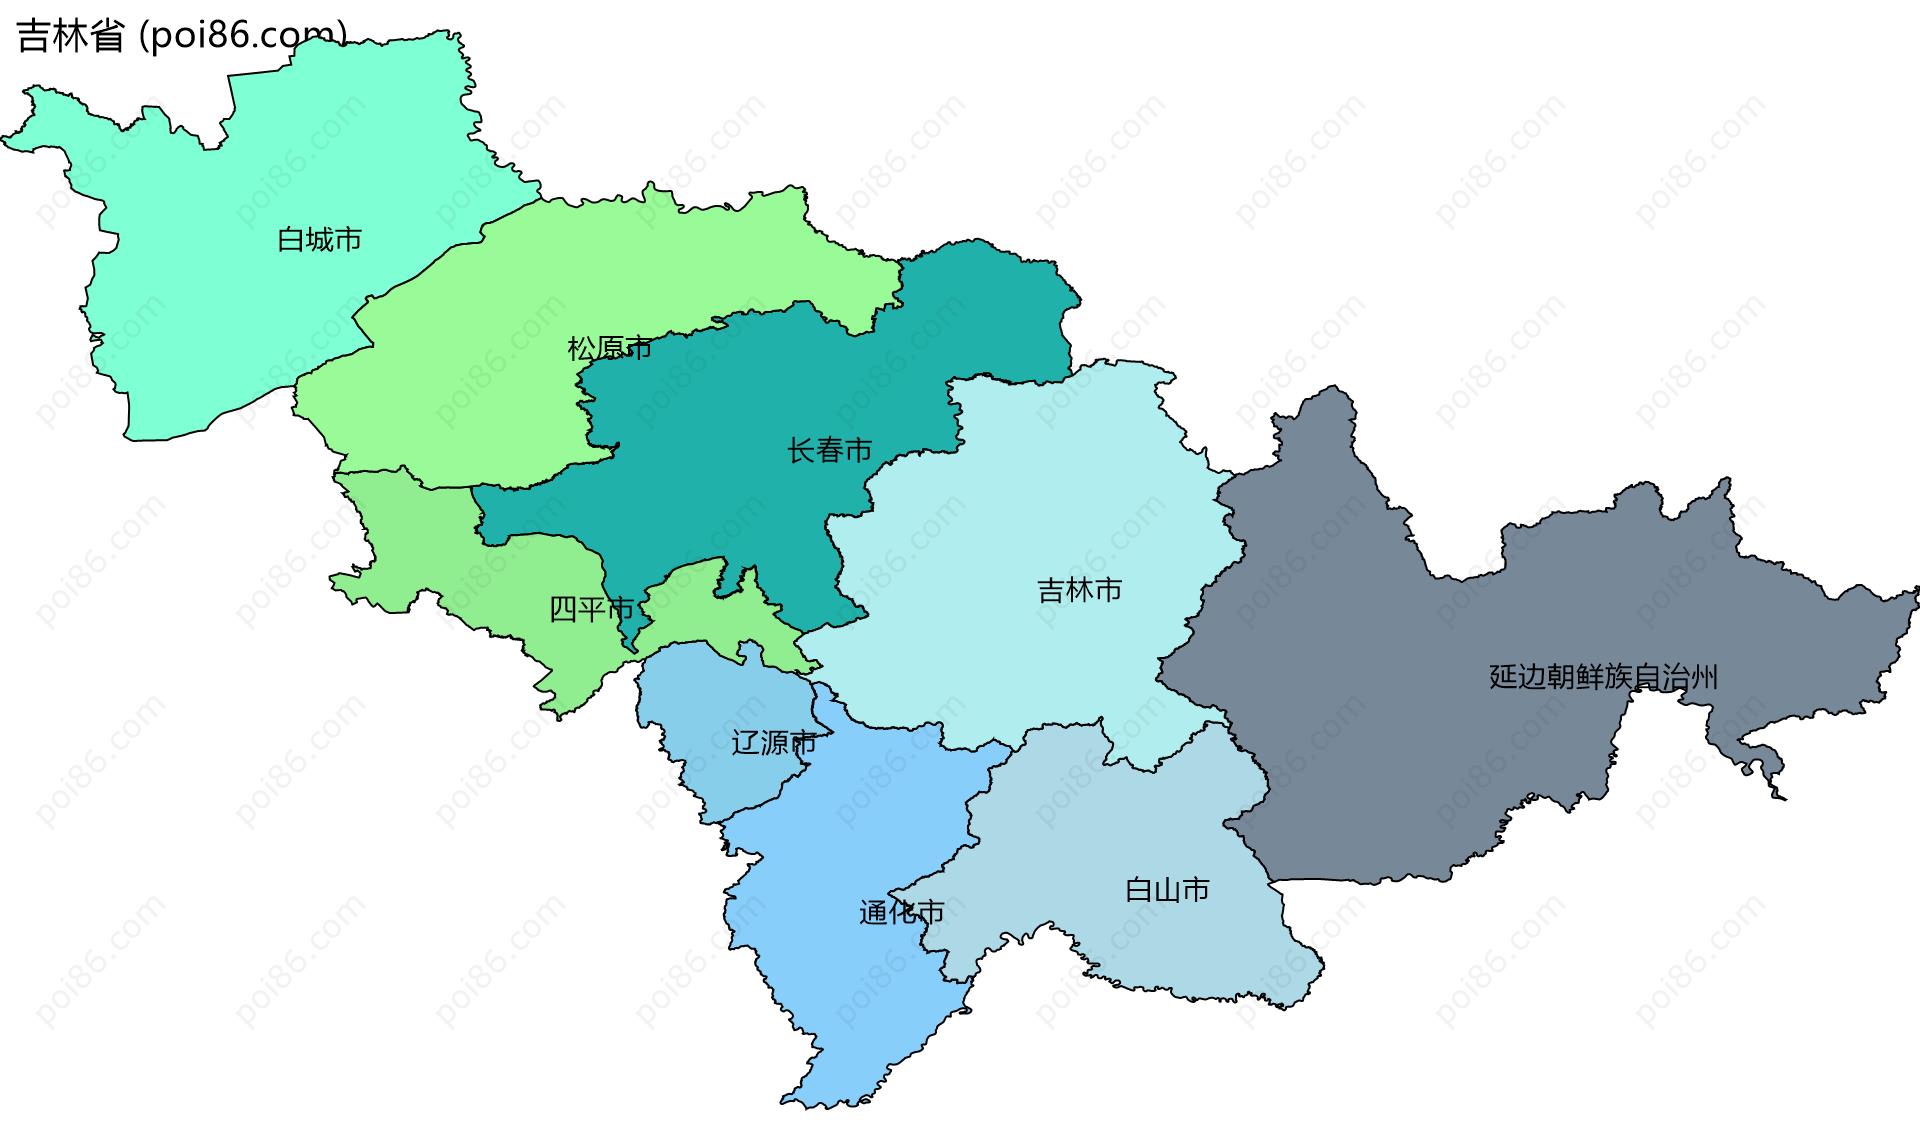 吉林省边界地图